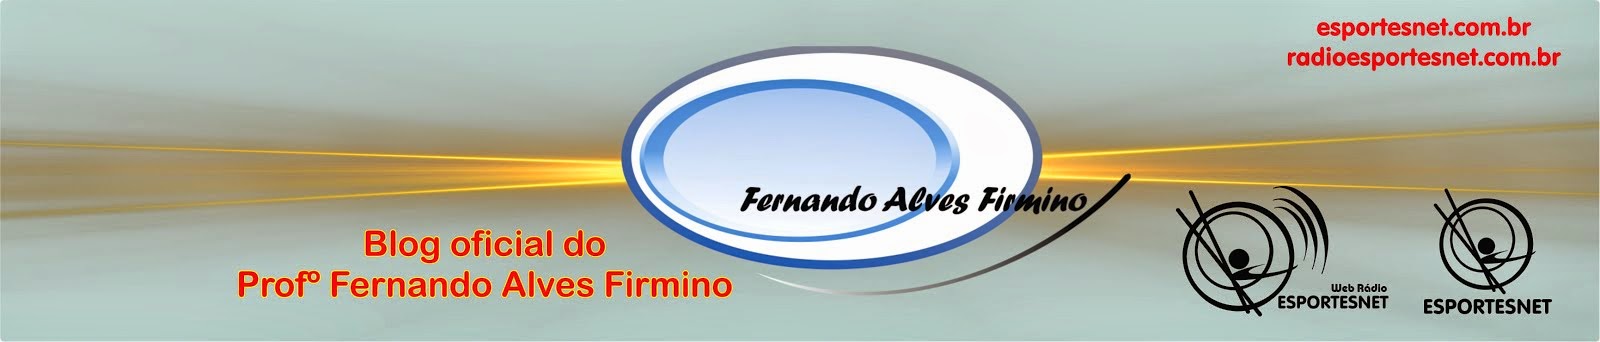 Profº Fernando Alves Firmino